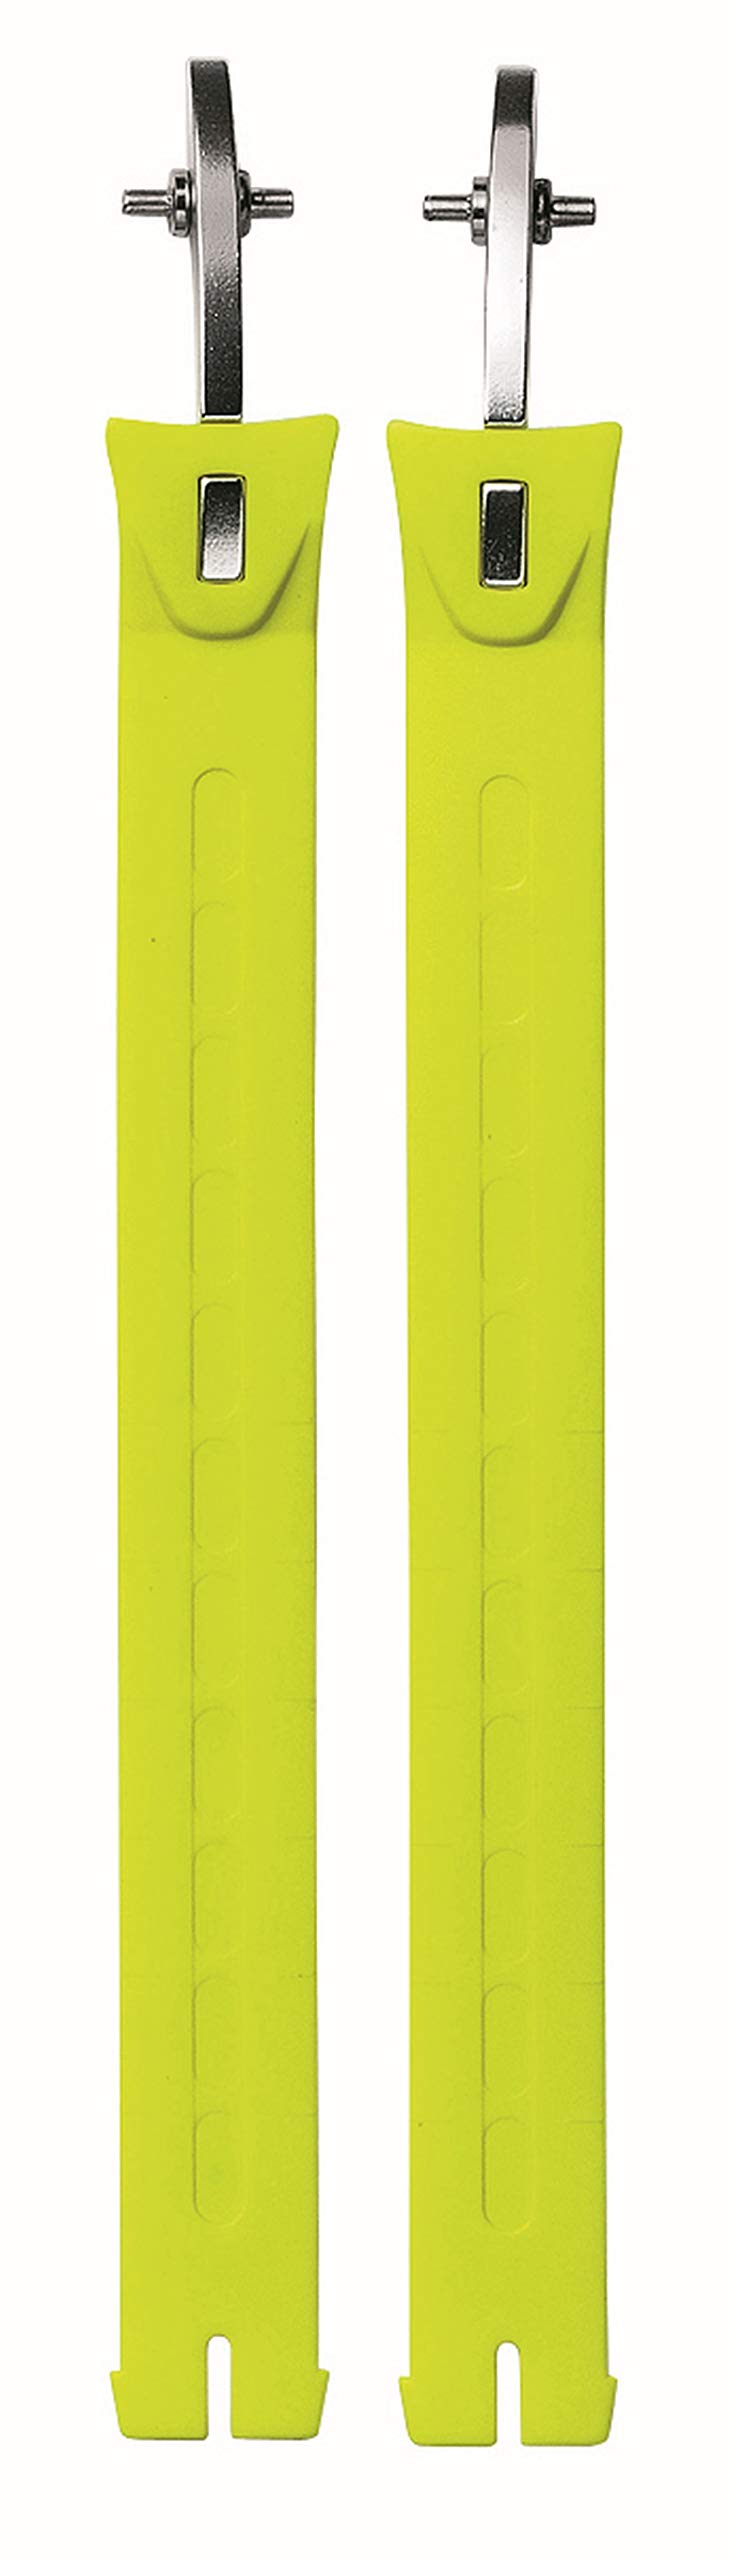 SIDI Ersatzteil Schnalle Ratschenband Strap extra lang neon gelb Fluo von Sidi